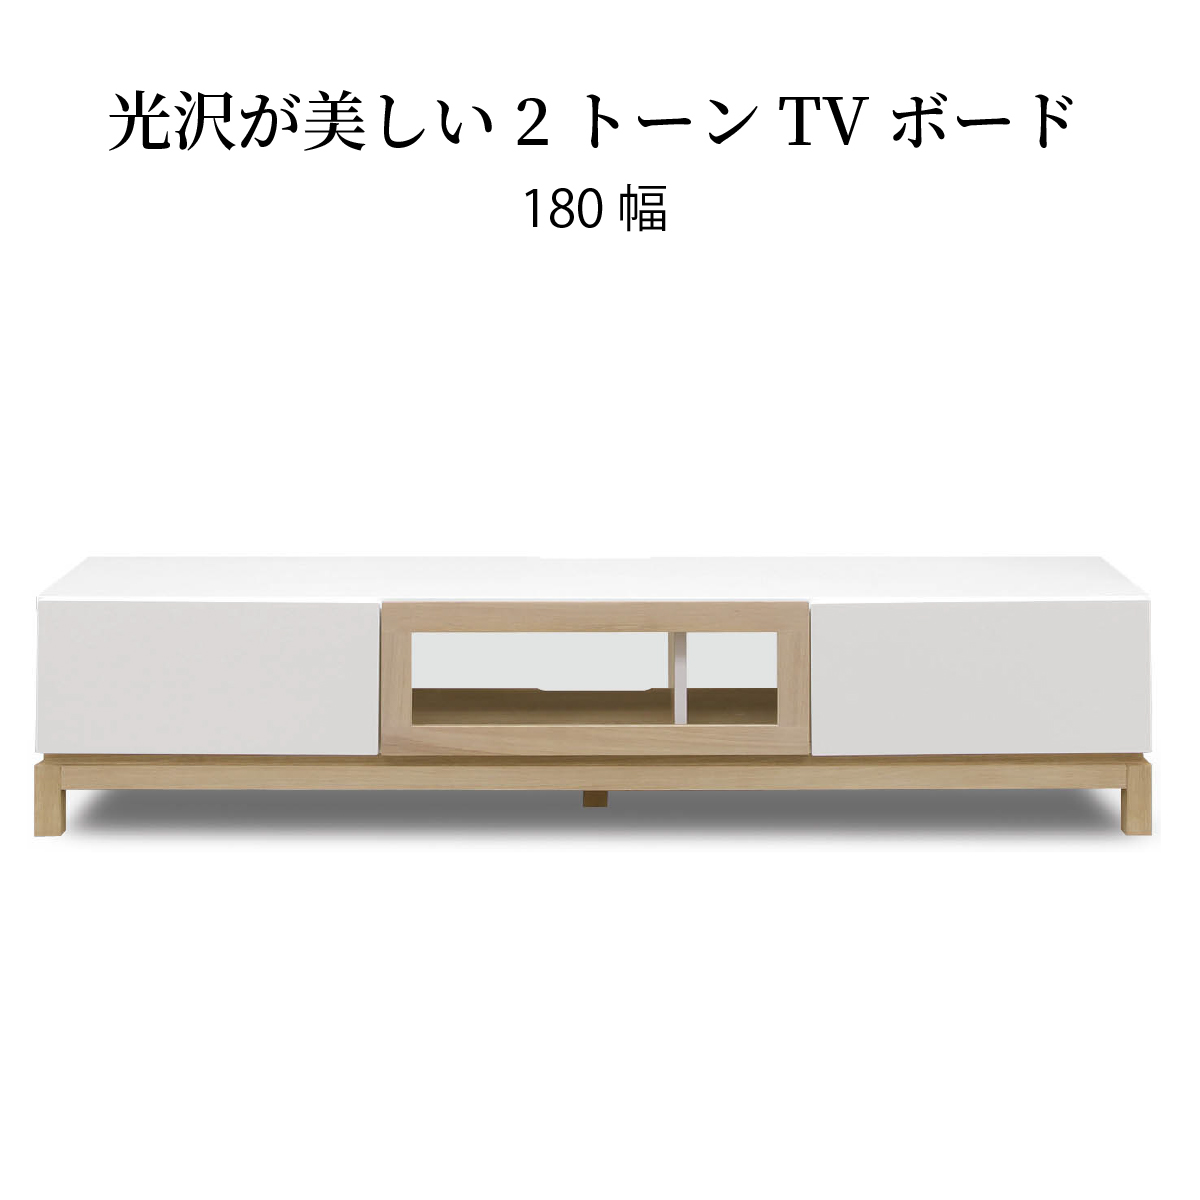 テレビ台 テレビボード ホワイトオーク 無垢材 TW 180 TVB｜家具の通販